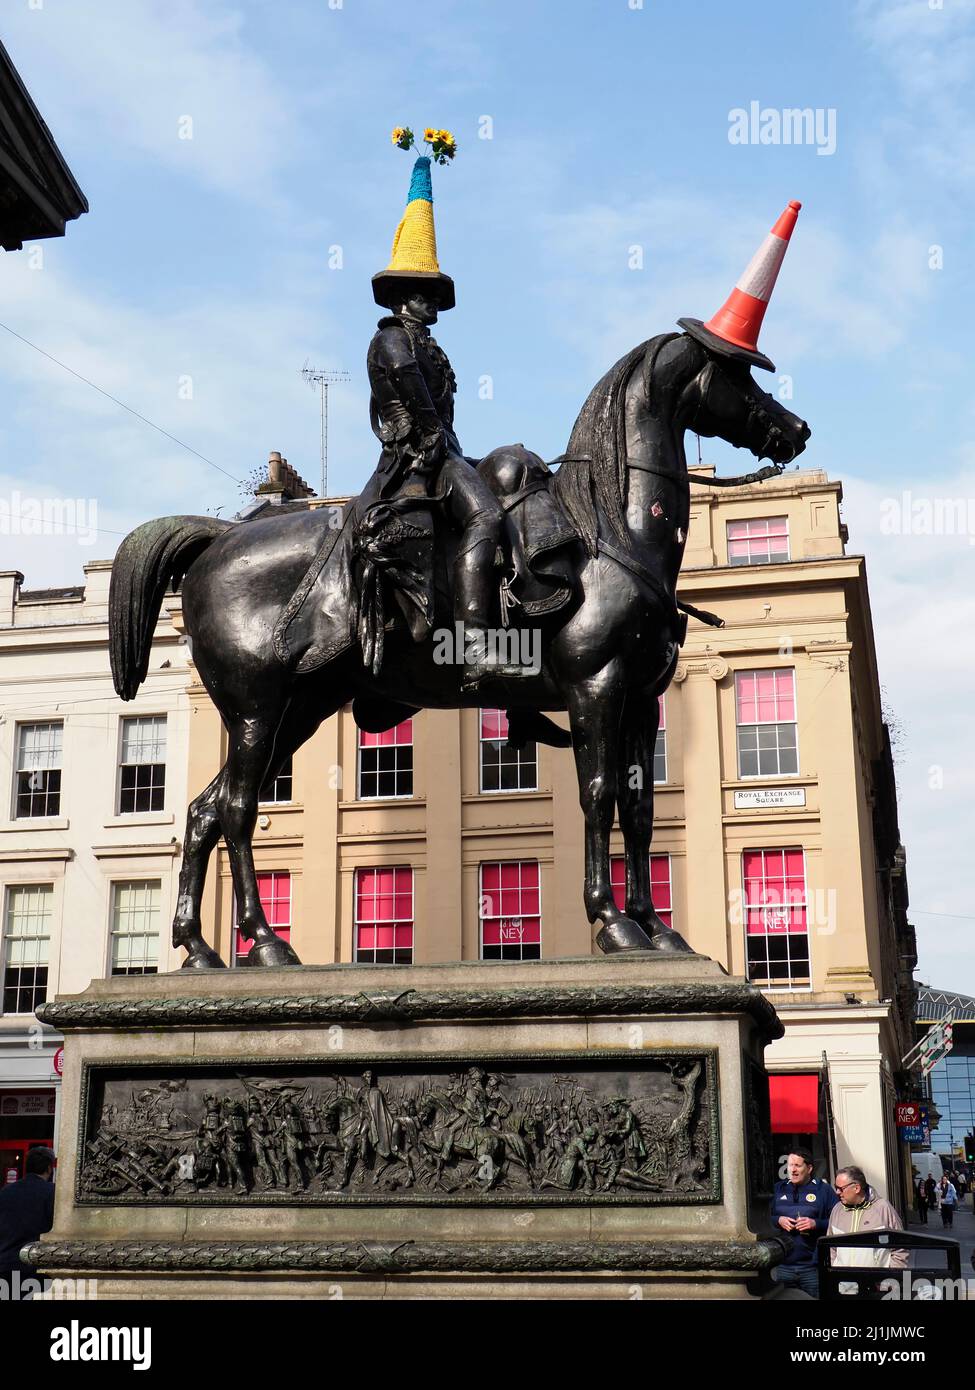 Statue du duc de Wellington aux couleurs d'Ukrane sur le cône de circulation , à la Galerie d'art moderne, Glasgow, Écosse, Royaume-Uni, mars 2022 Banque D'Images